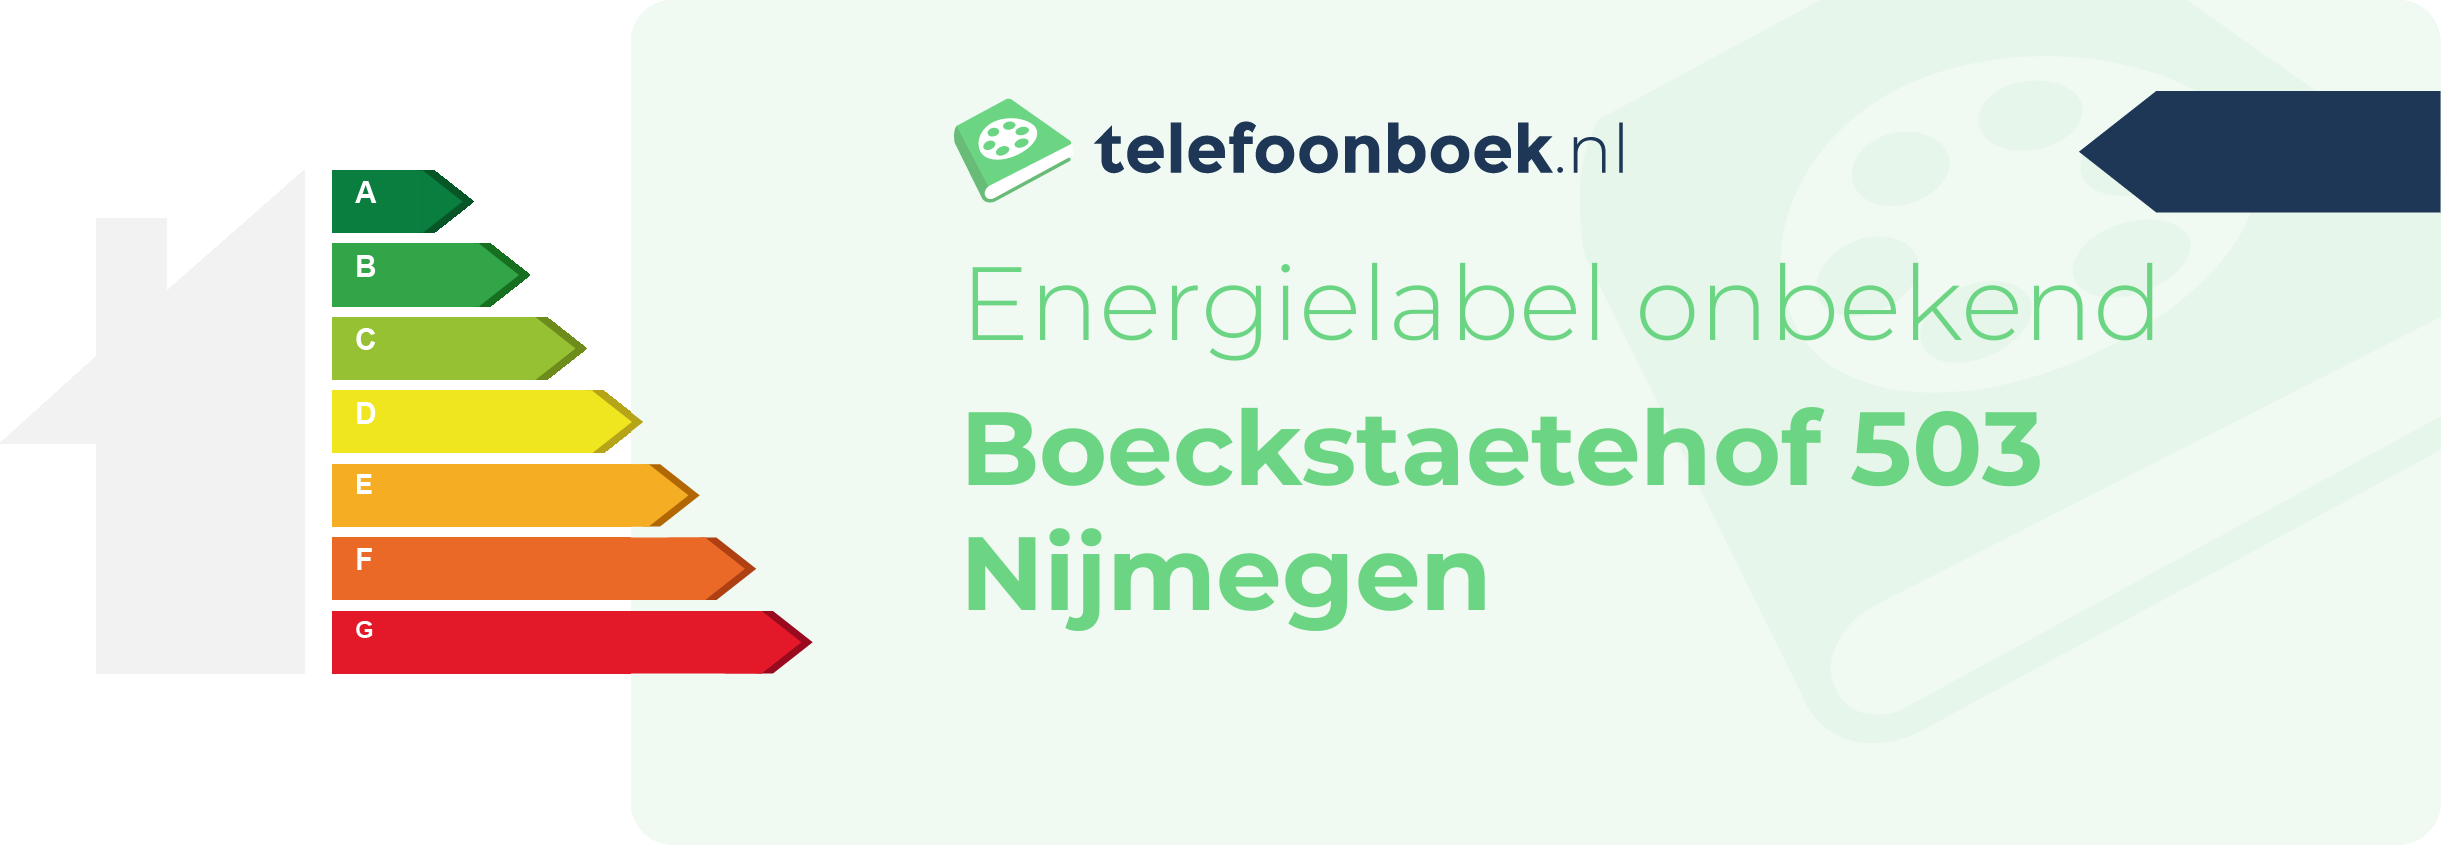 Energielabel Boeckstaetehof 503 Nijmegen